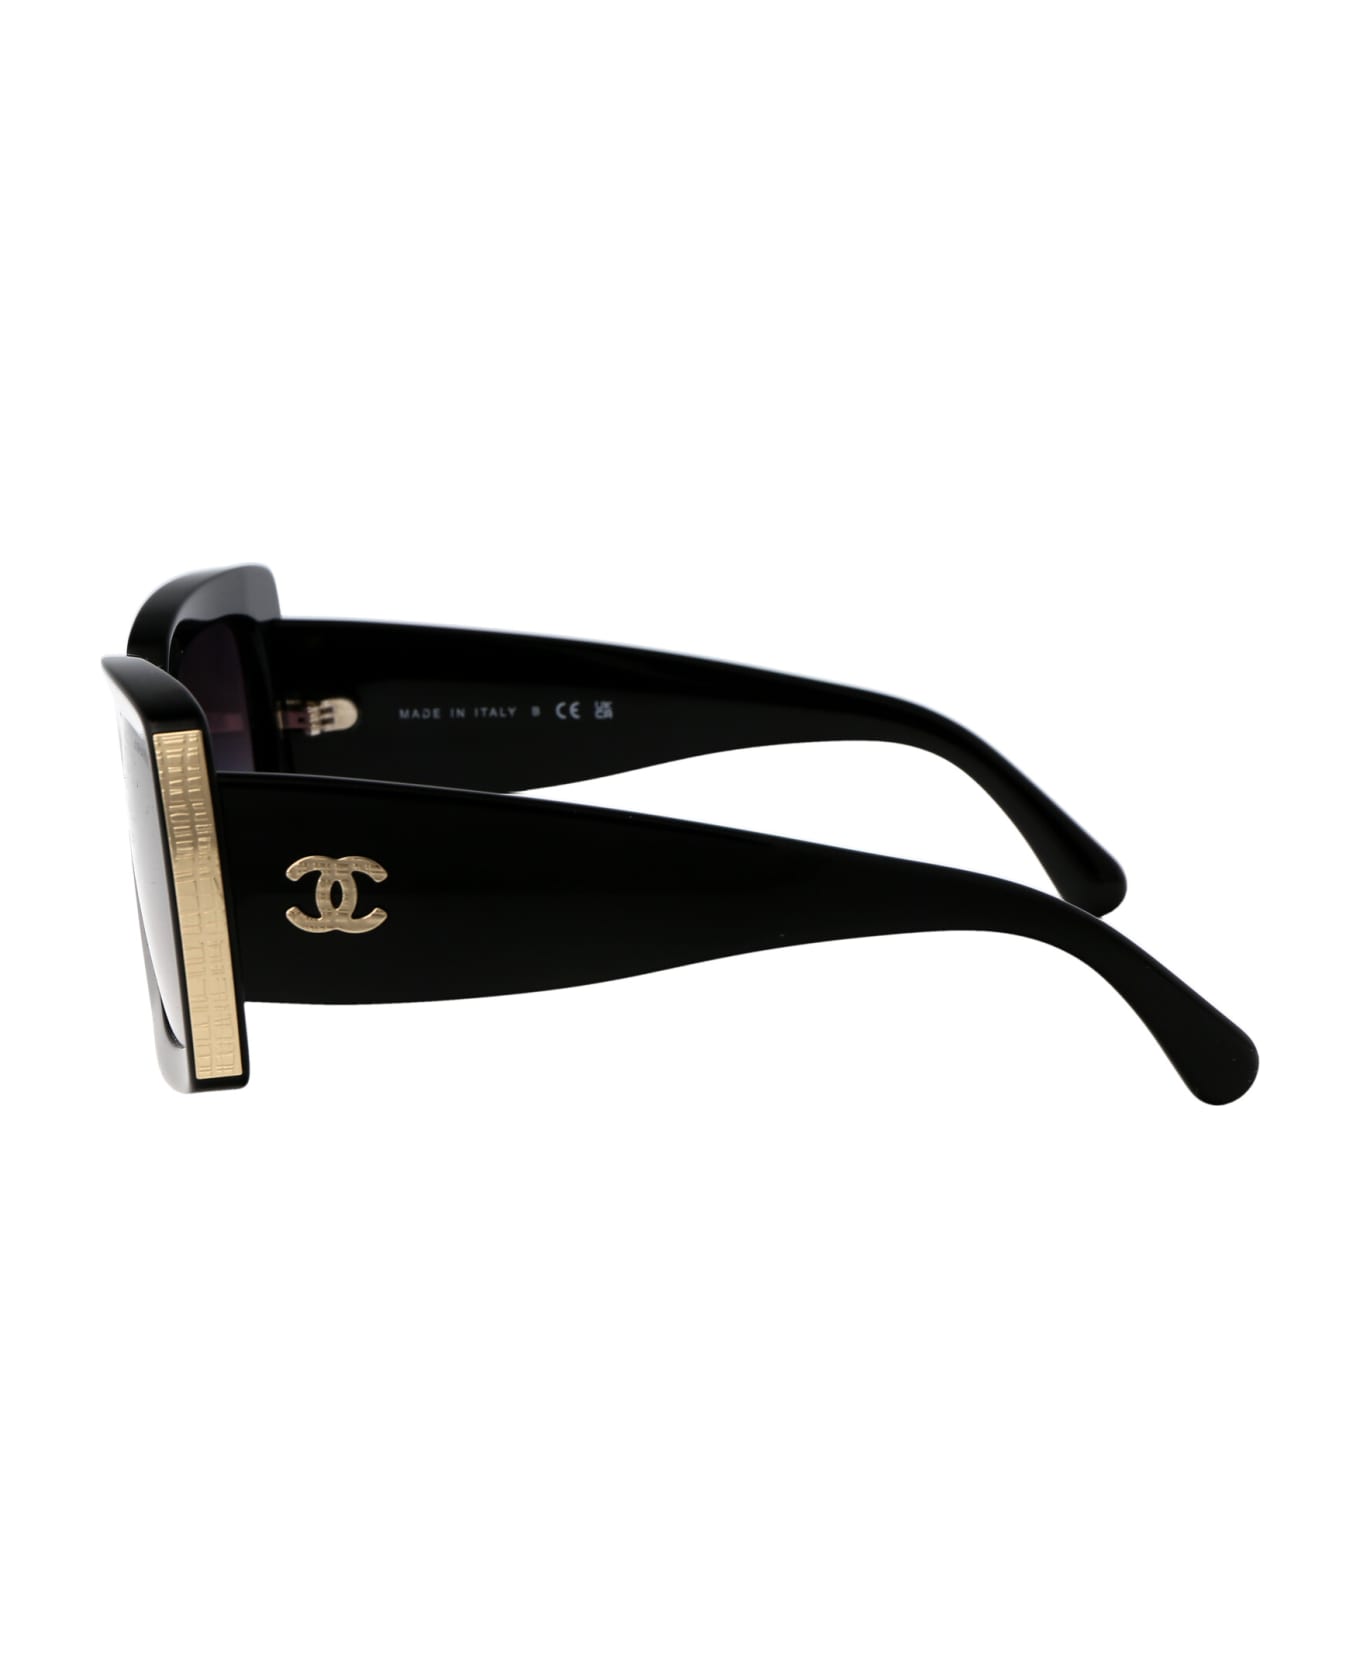 Chanel 0ch5435 Sunglasses - C622S6 BLACK